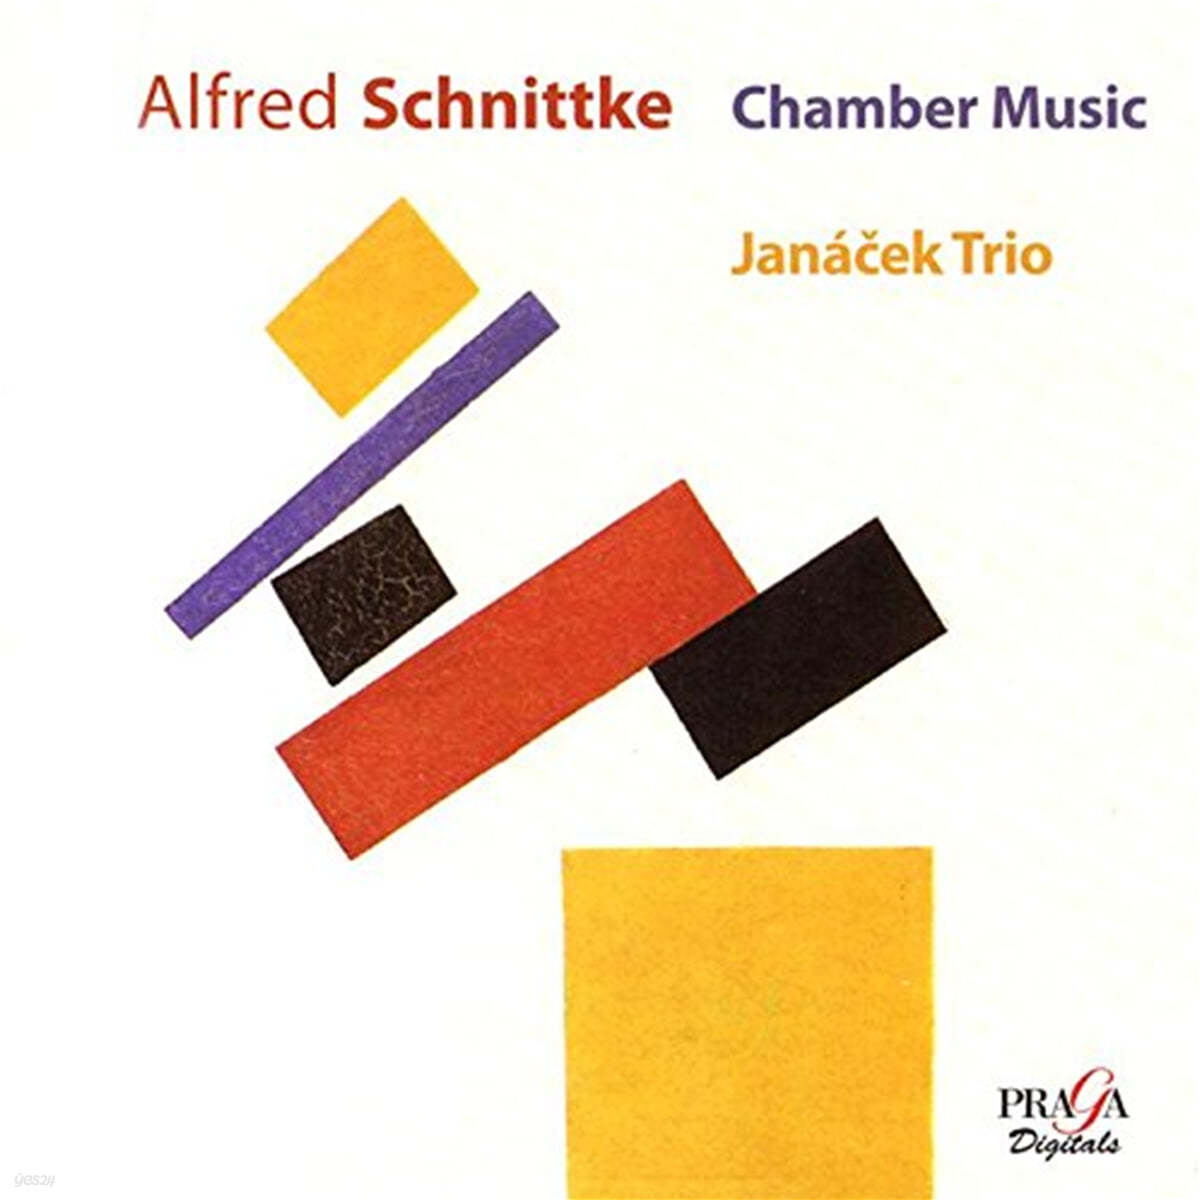 Janacek Trio 슈니트케: 피아노 트리오, 파가니니, 첼로를 위한 마드리갈, 피아노 소나타 1번